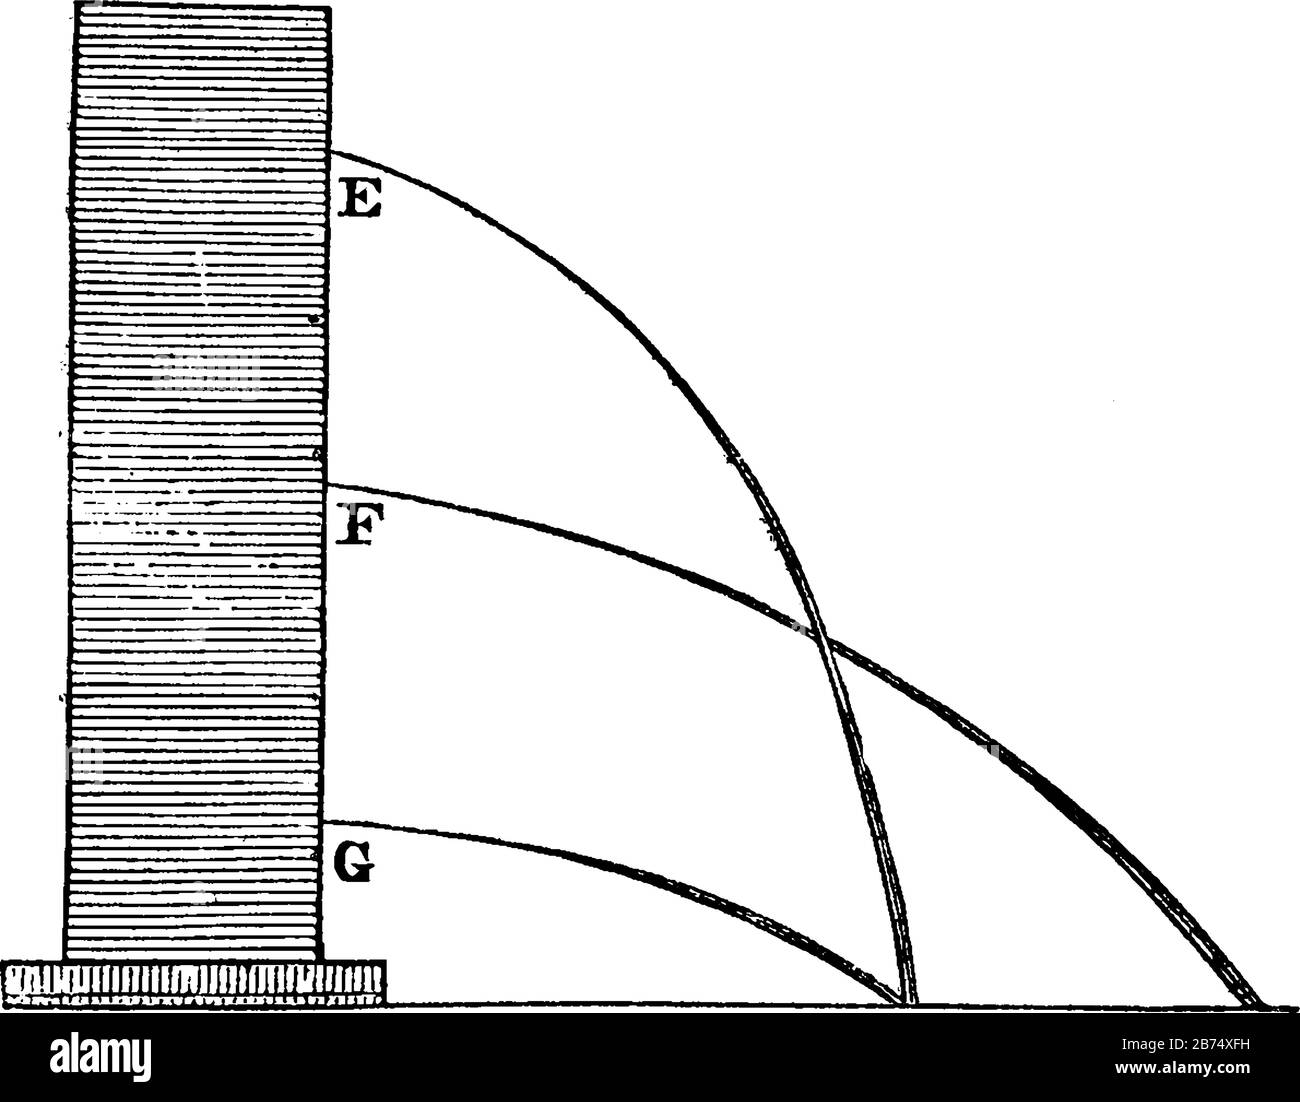 Dieses Diagramm stellt Die Wassergeschwindigkeit und Die Schwerkraft, die Zeichnung von Vintage-Linien oder die Gravurdarstellung dar. Stock Vektor